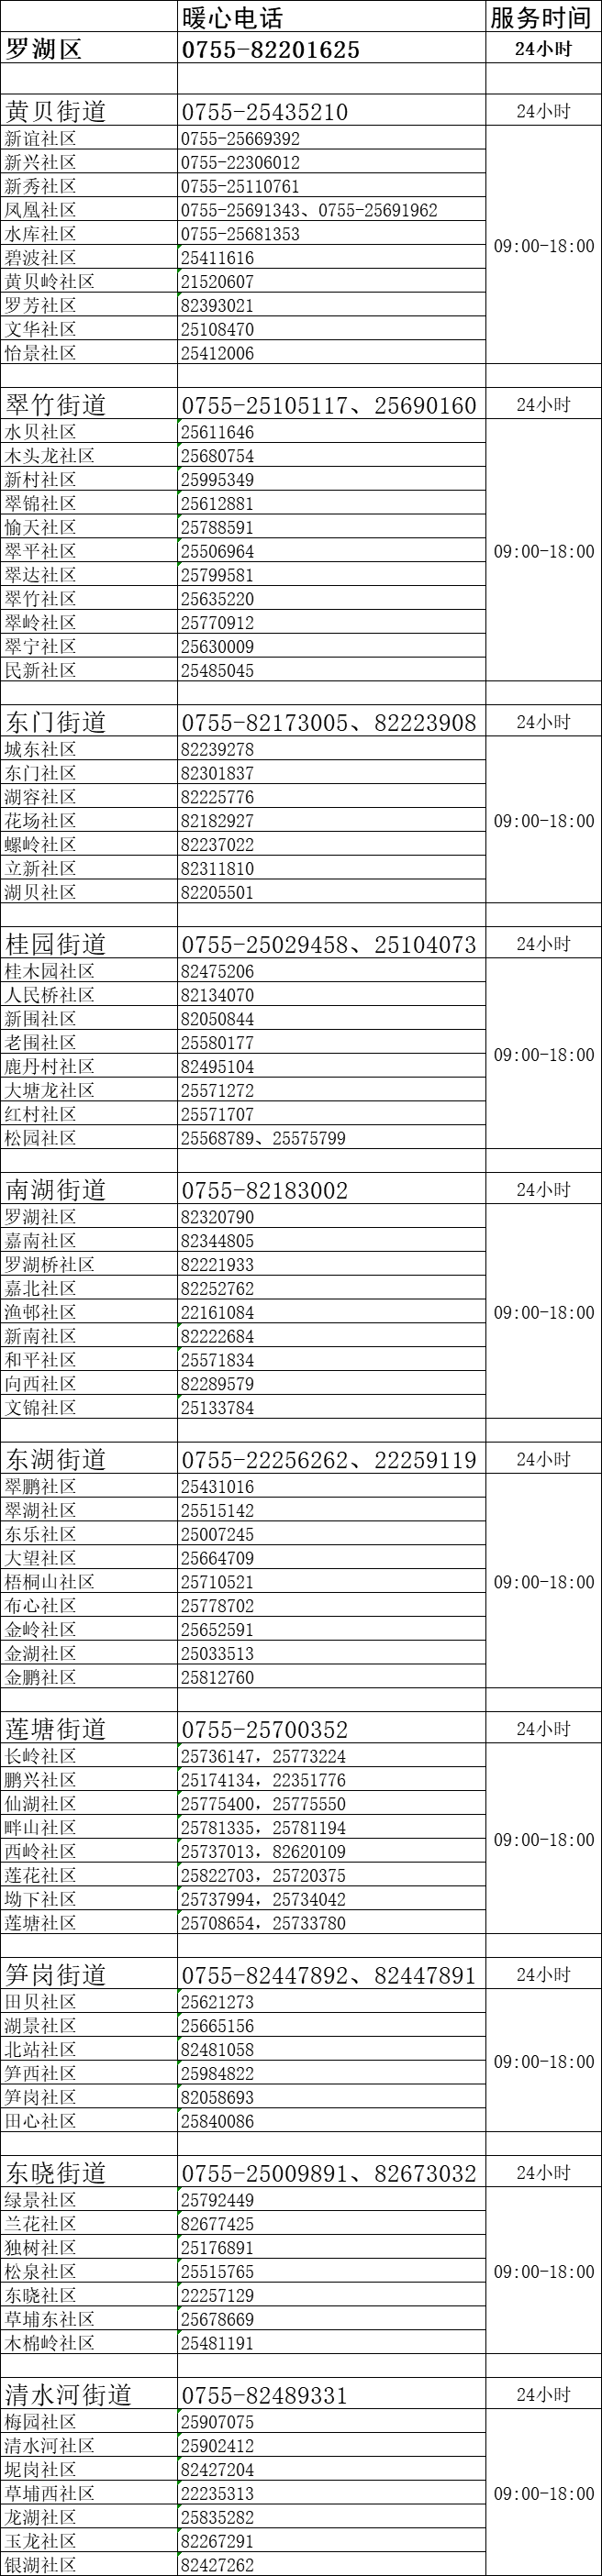 深圳市罗湖区新型冠状病毒肺炎疫情防控指挥部通告〔2022〕2号